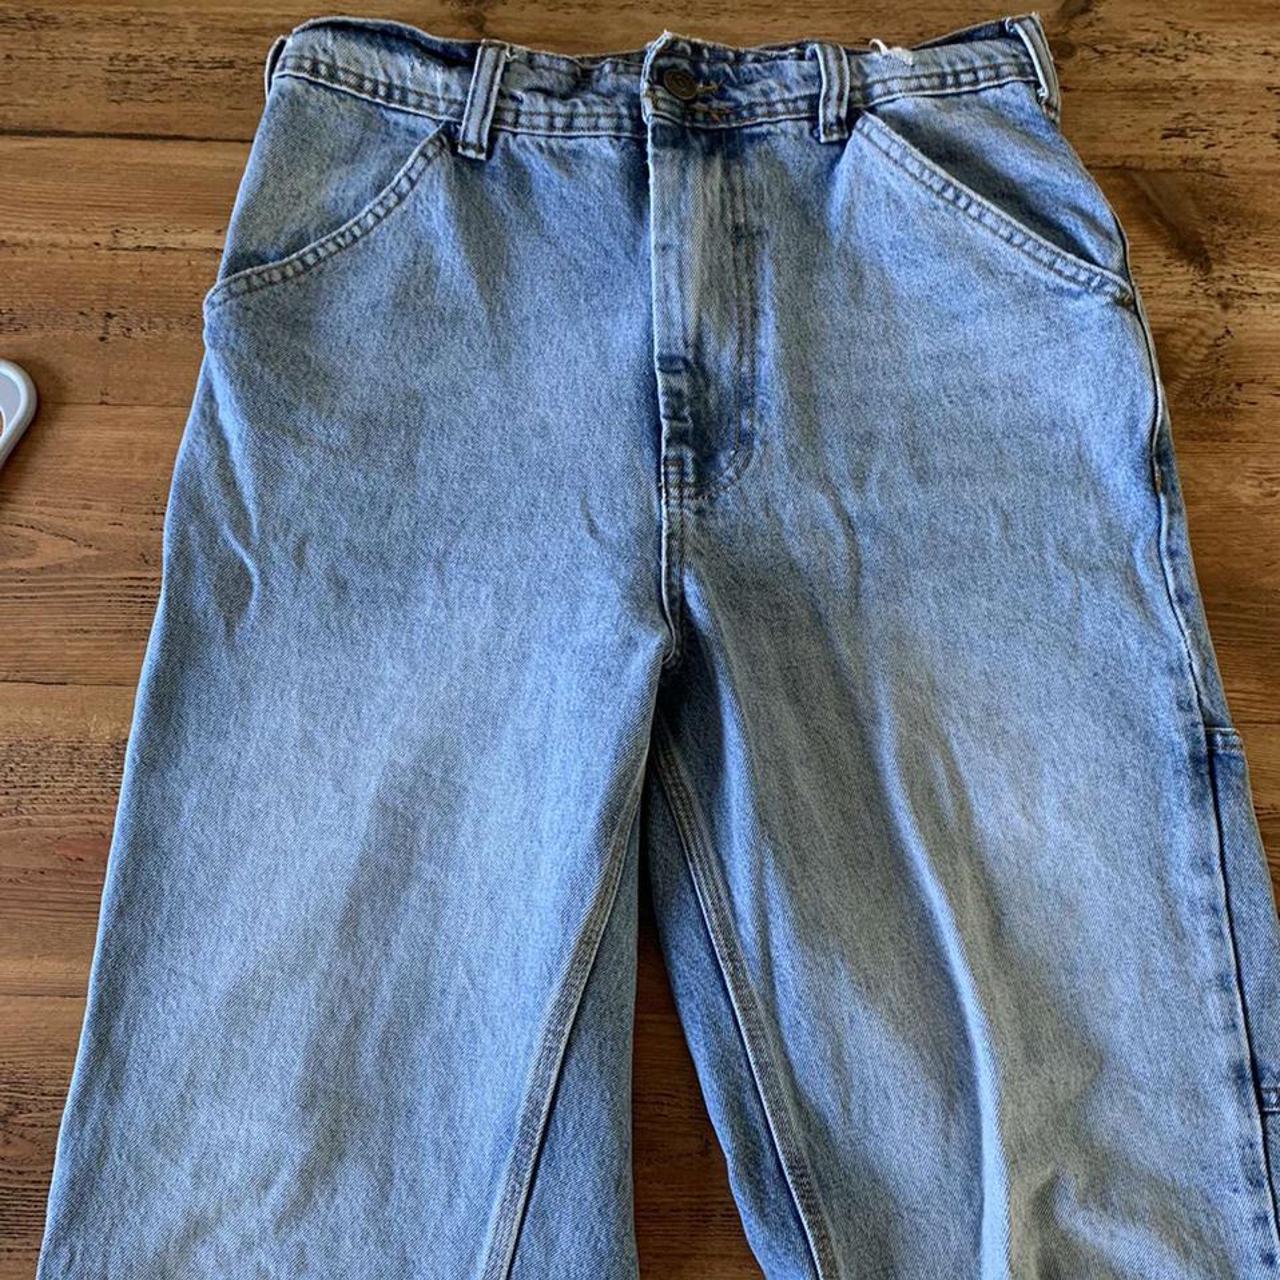 Mens blue denim baggy jeans W30 L32 #urbanoutfitters... - Depop